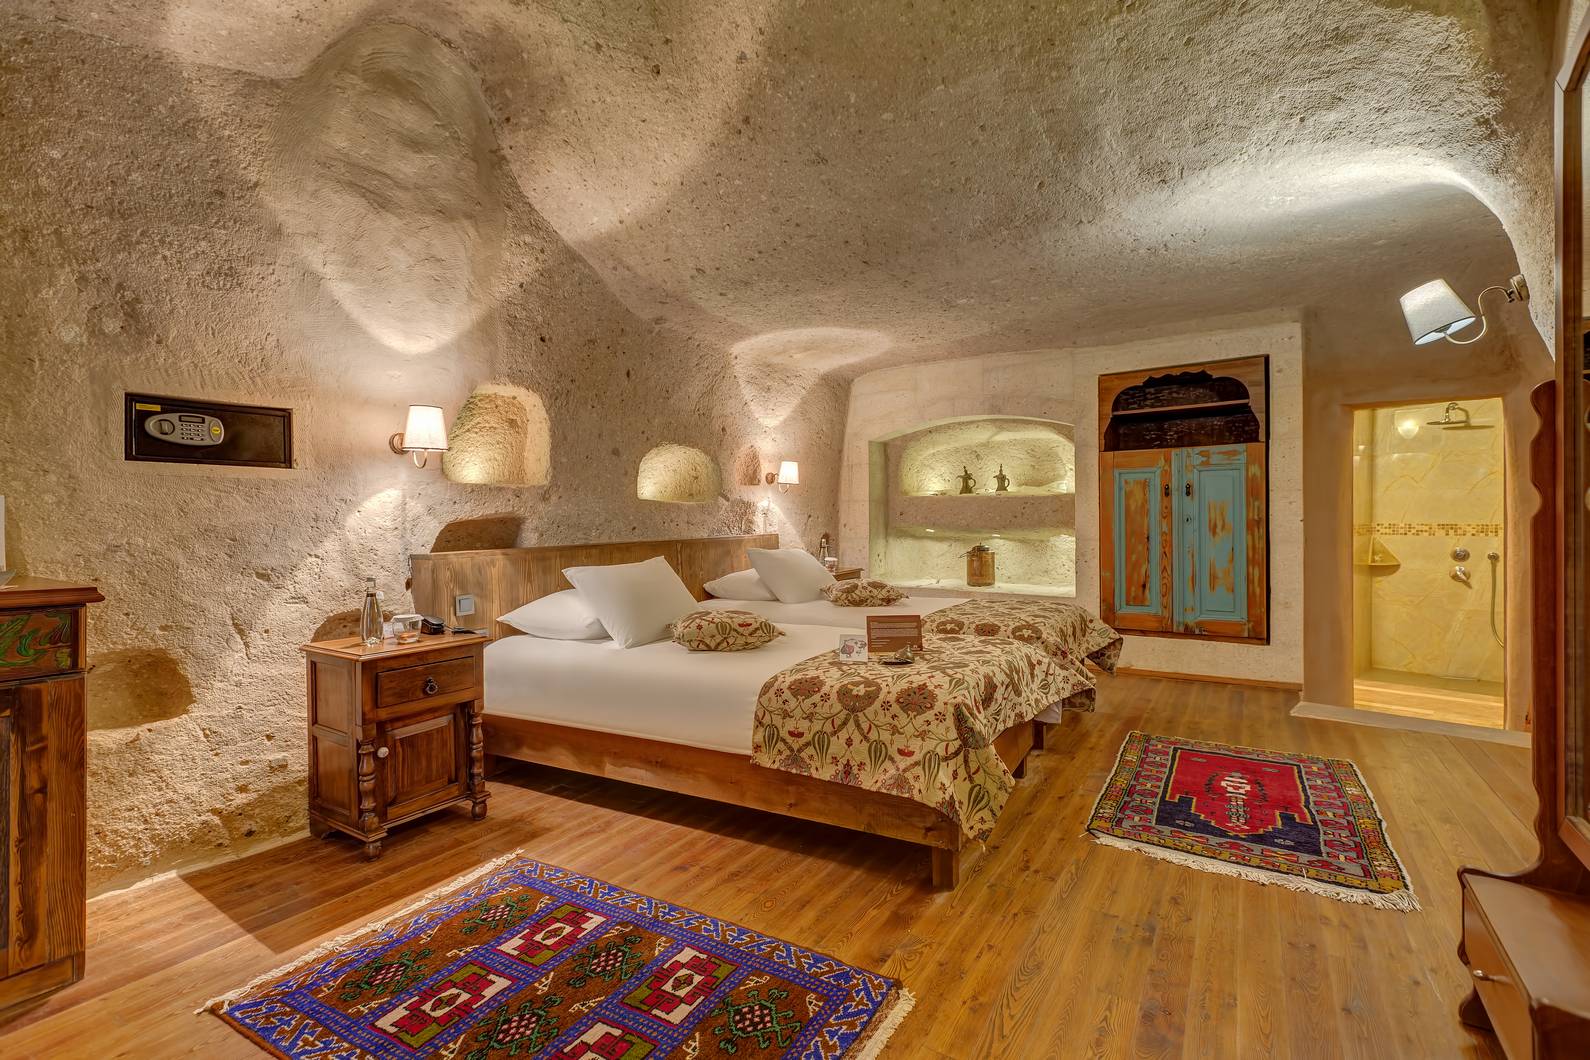 203 – cave room cappadocia